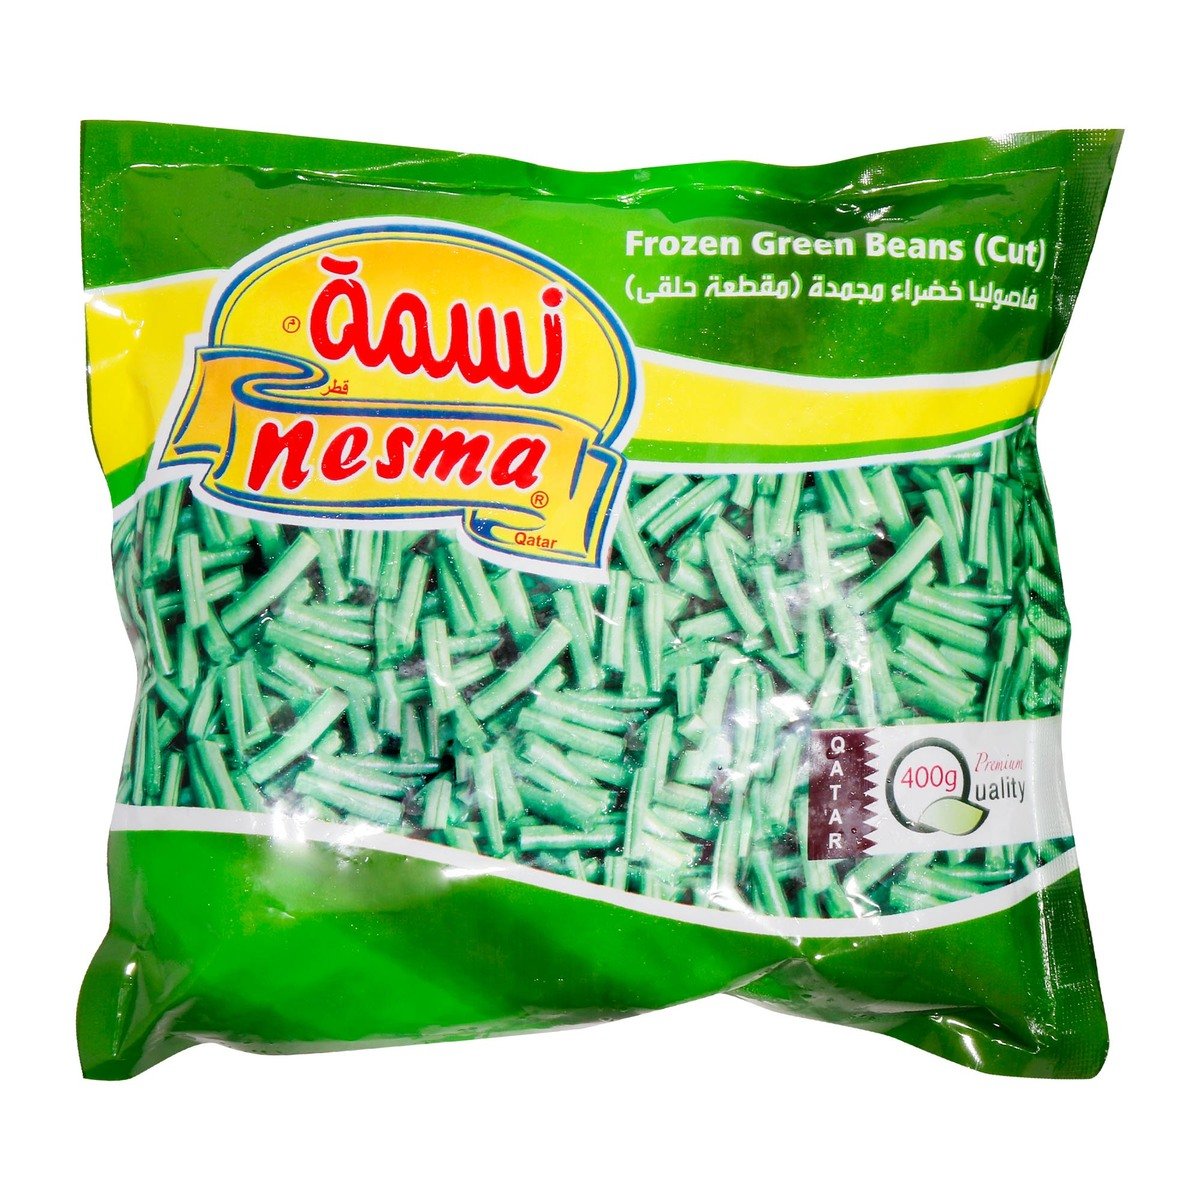 Nesma Frozen Green Beans Cut 400g